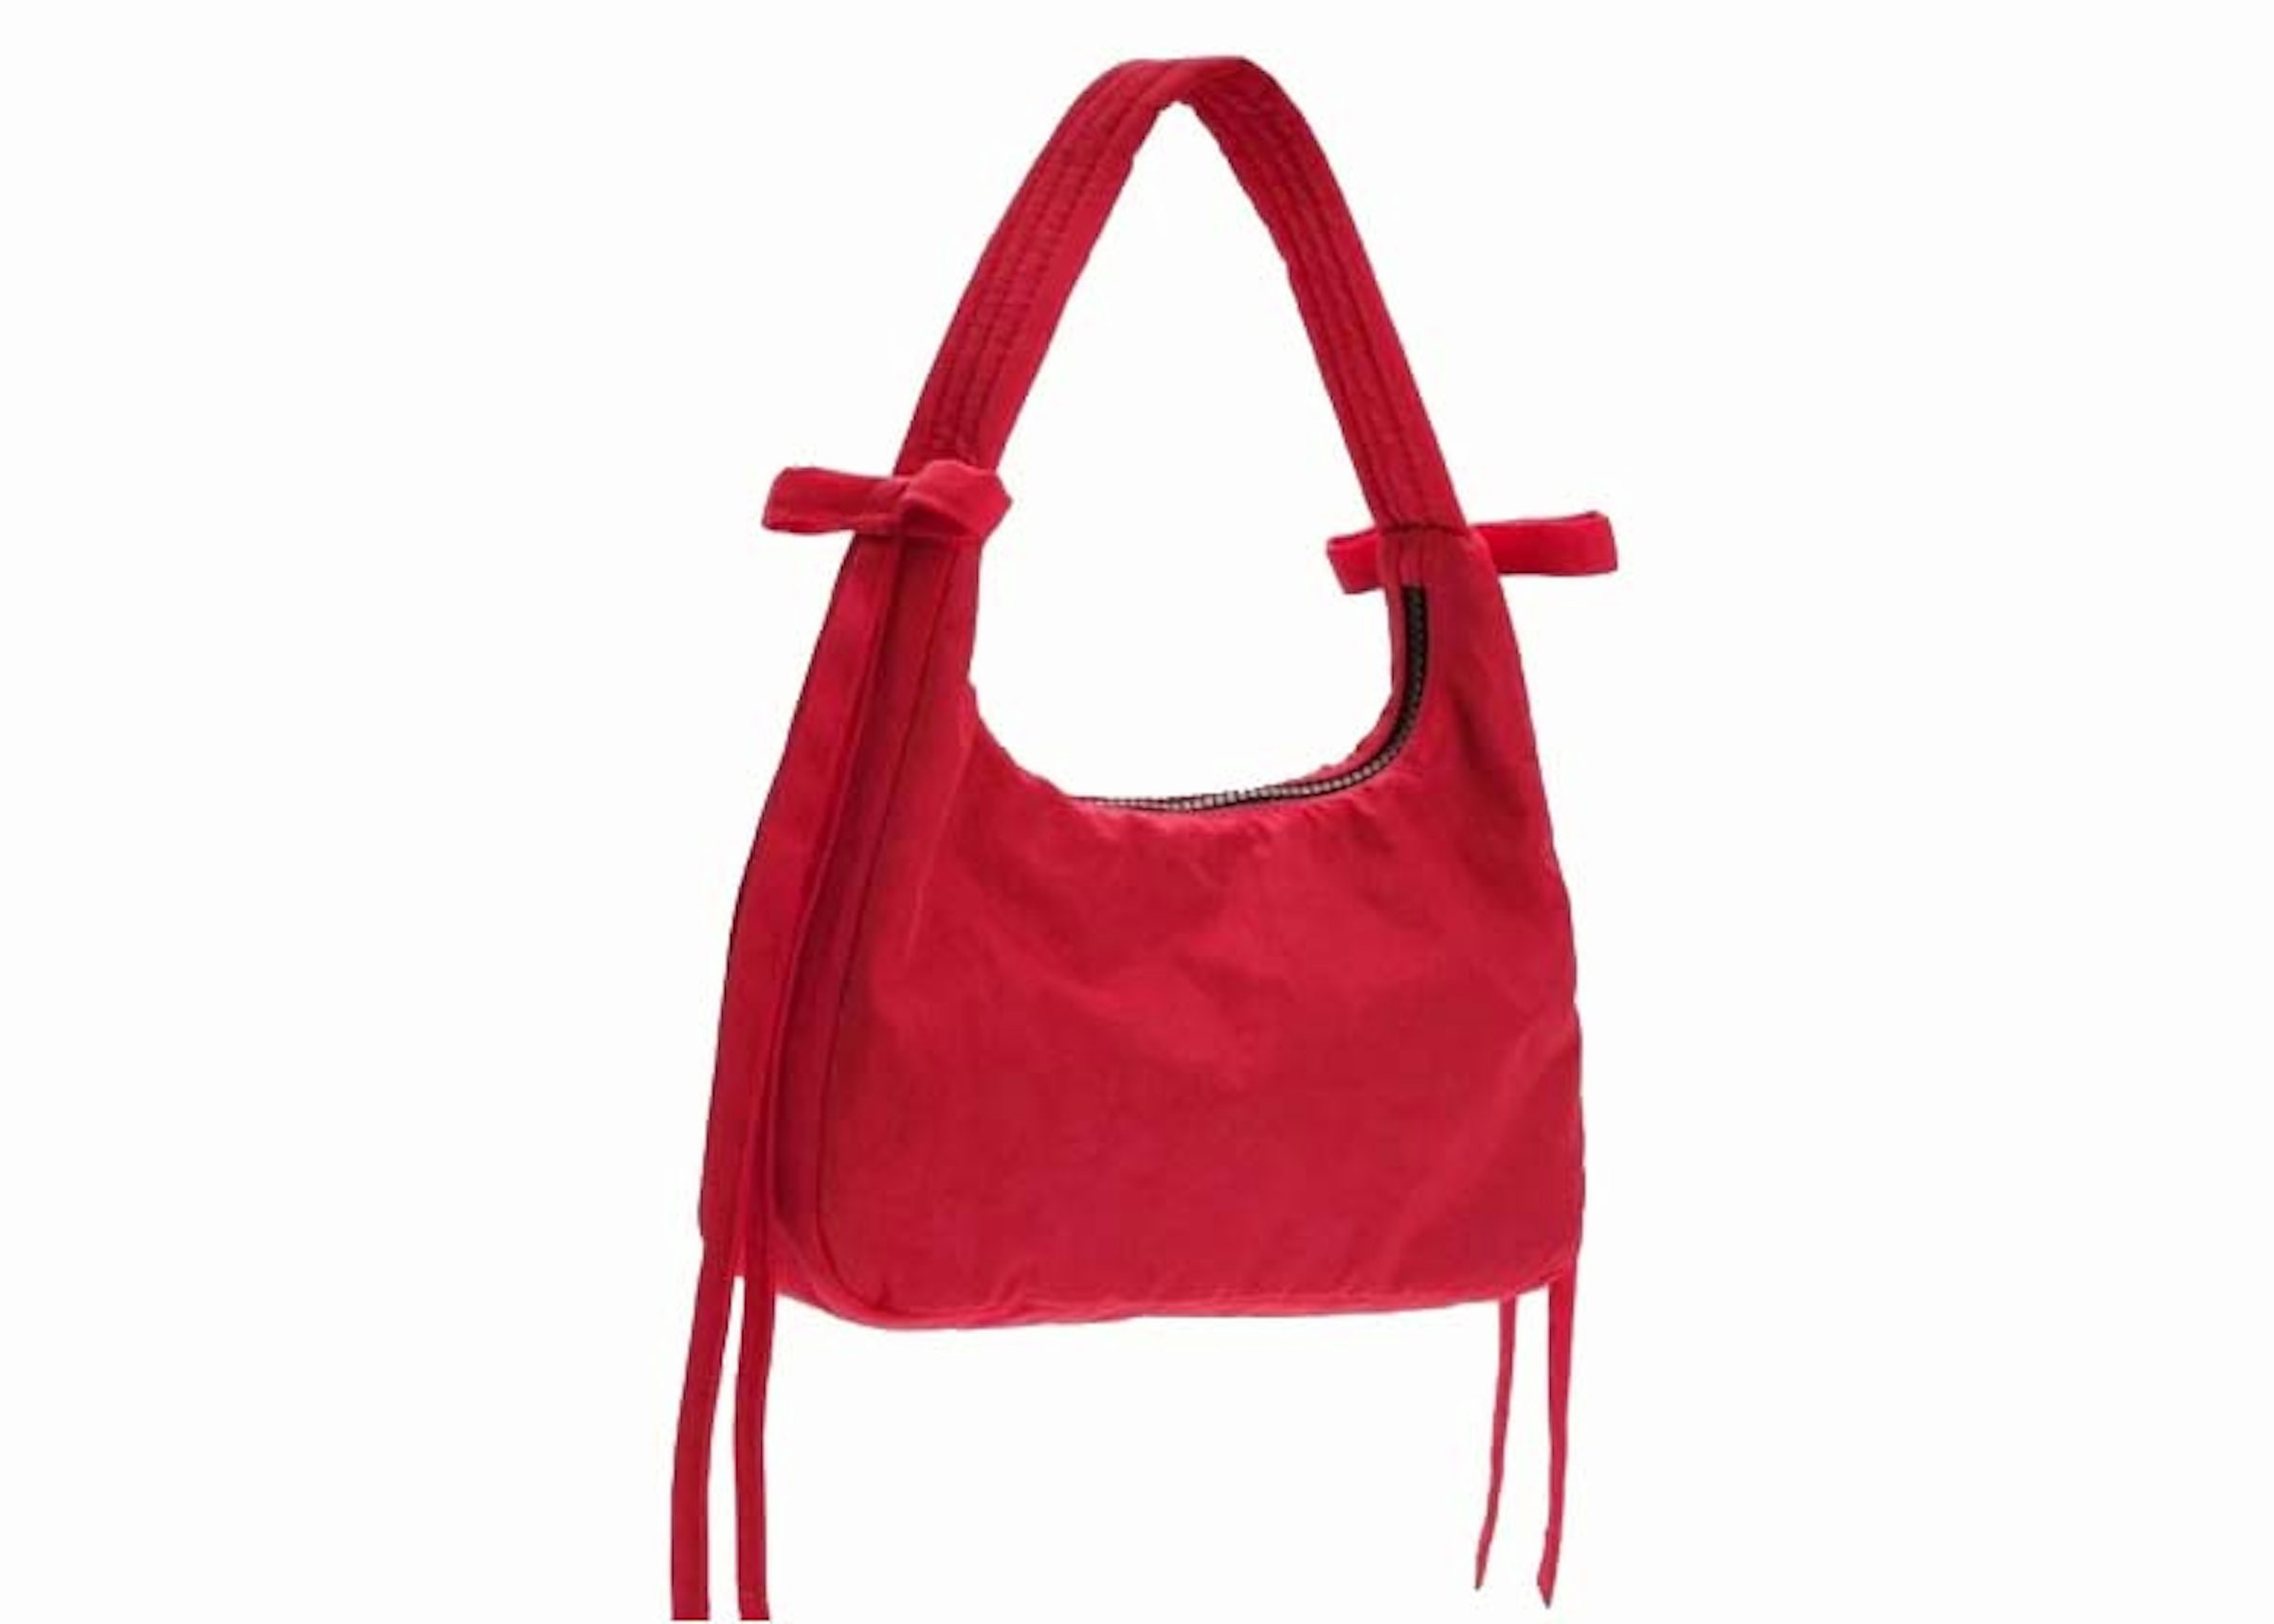 Designer-Inspired Handbags Under $80 - THE BALLER ON A BUDGET - An